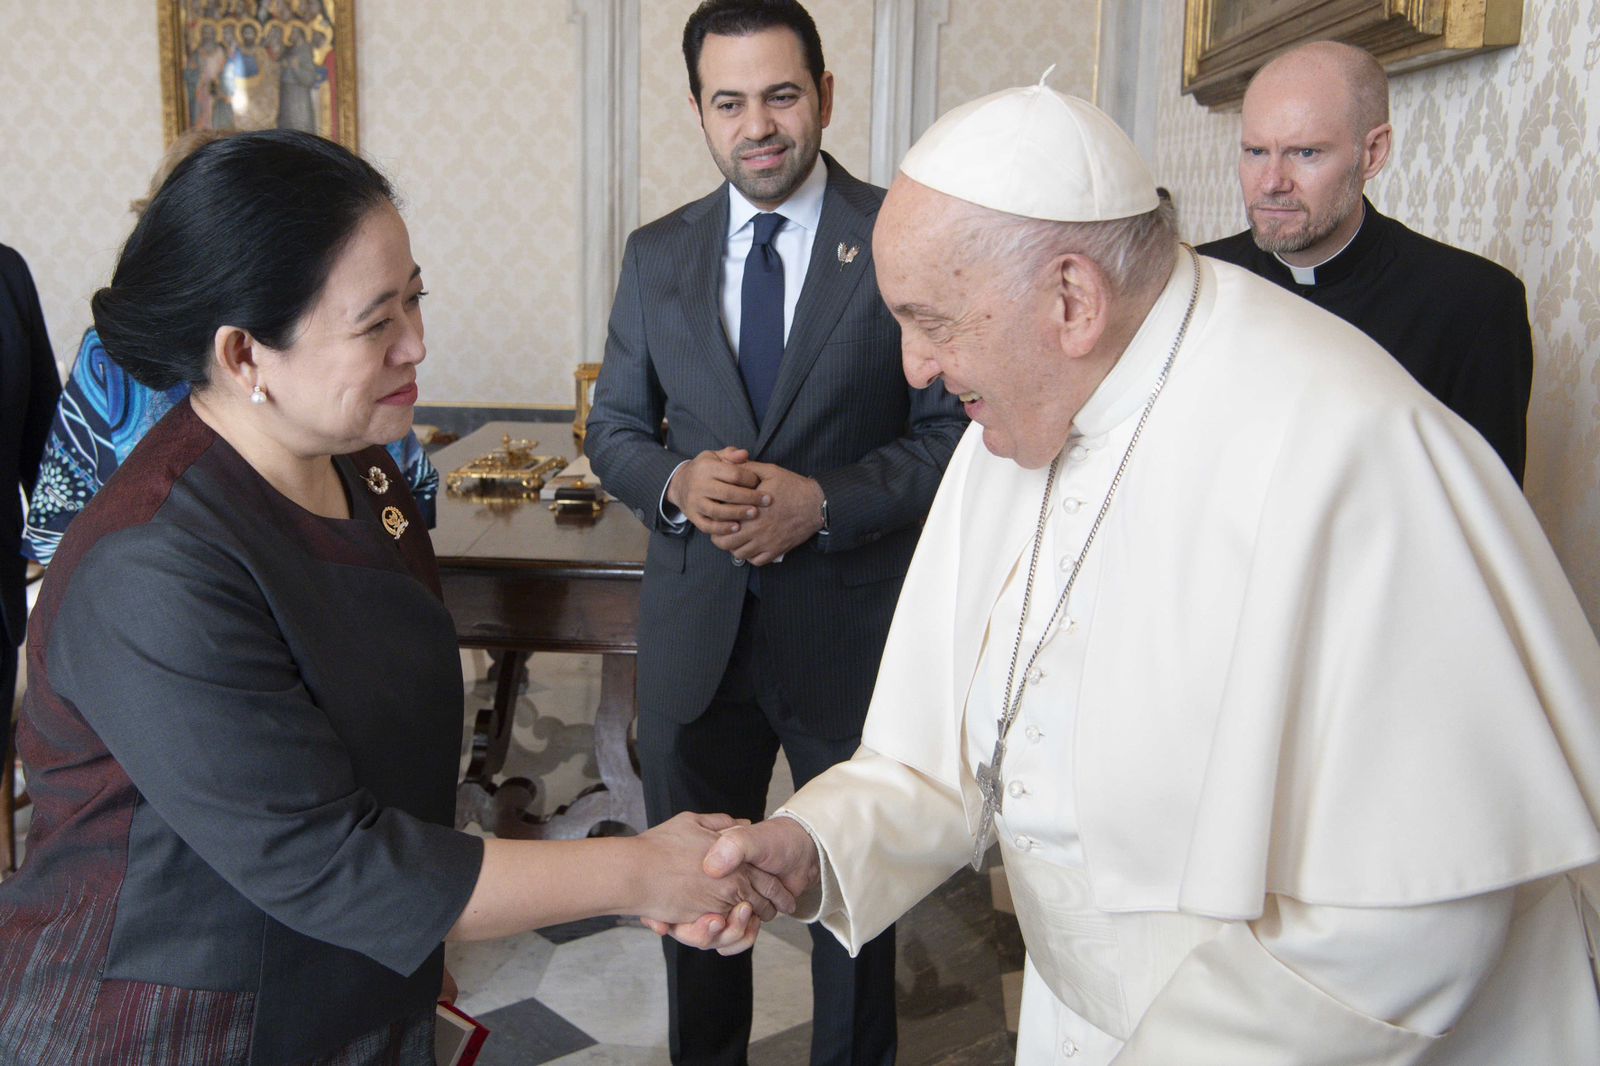 Puan dan Megawati Bertemu Paus Fransiskus di Vatikan, Bicara soal Toleransi hingga Perdamaian Dunia